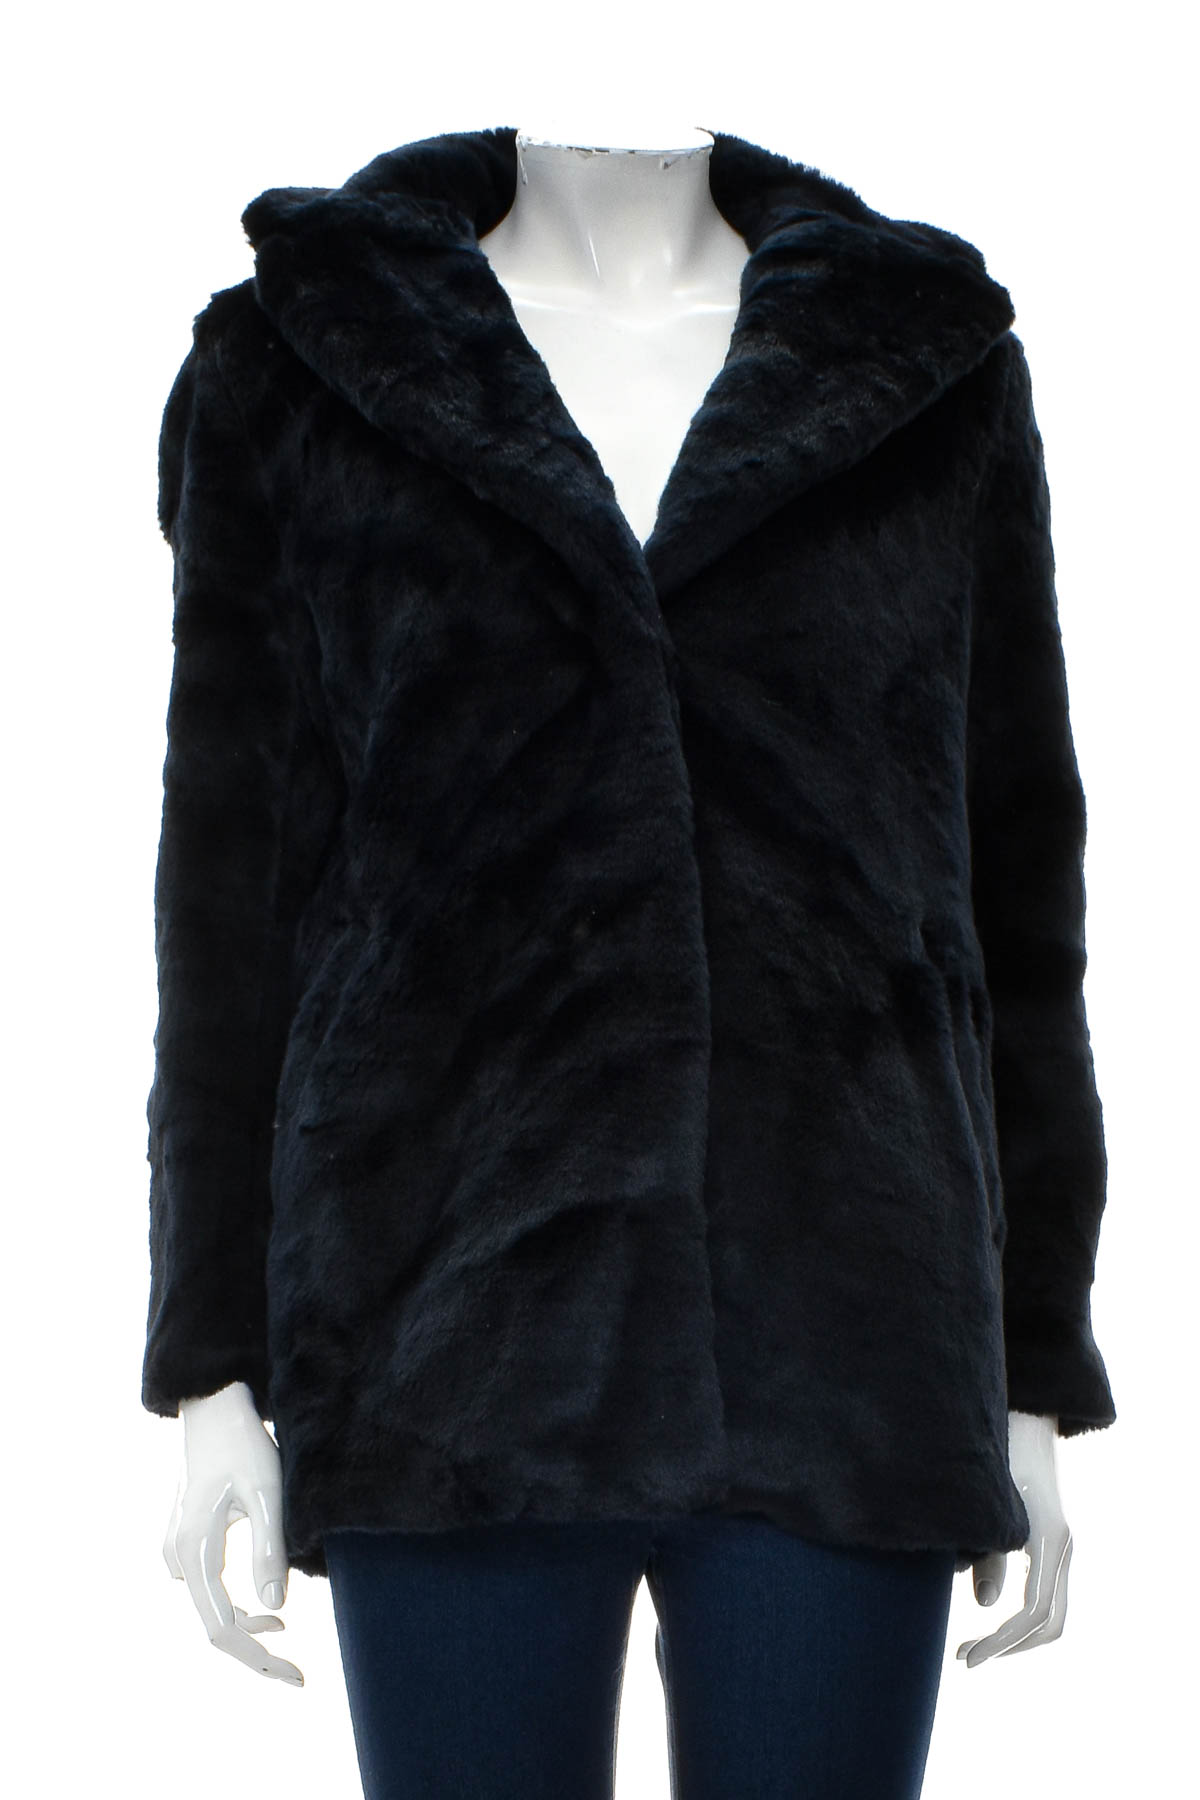 Γυναικείο παλτό - H&M - 0